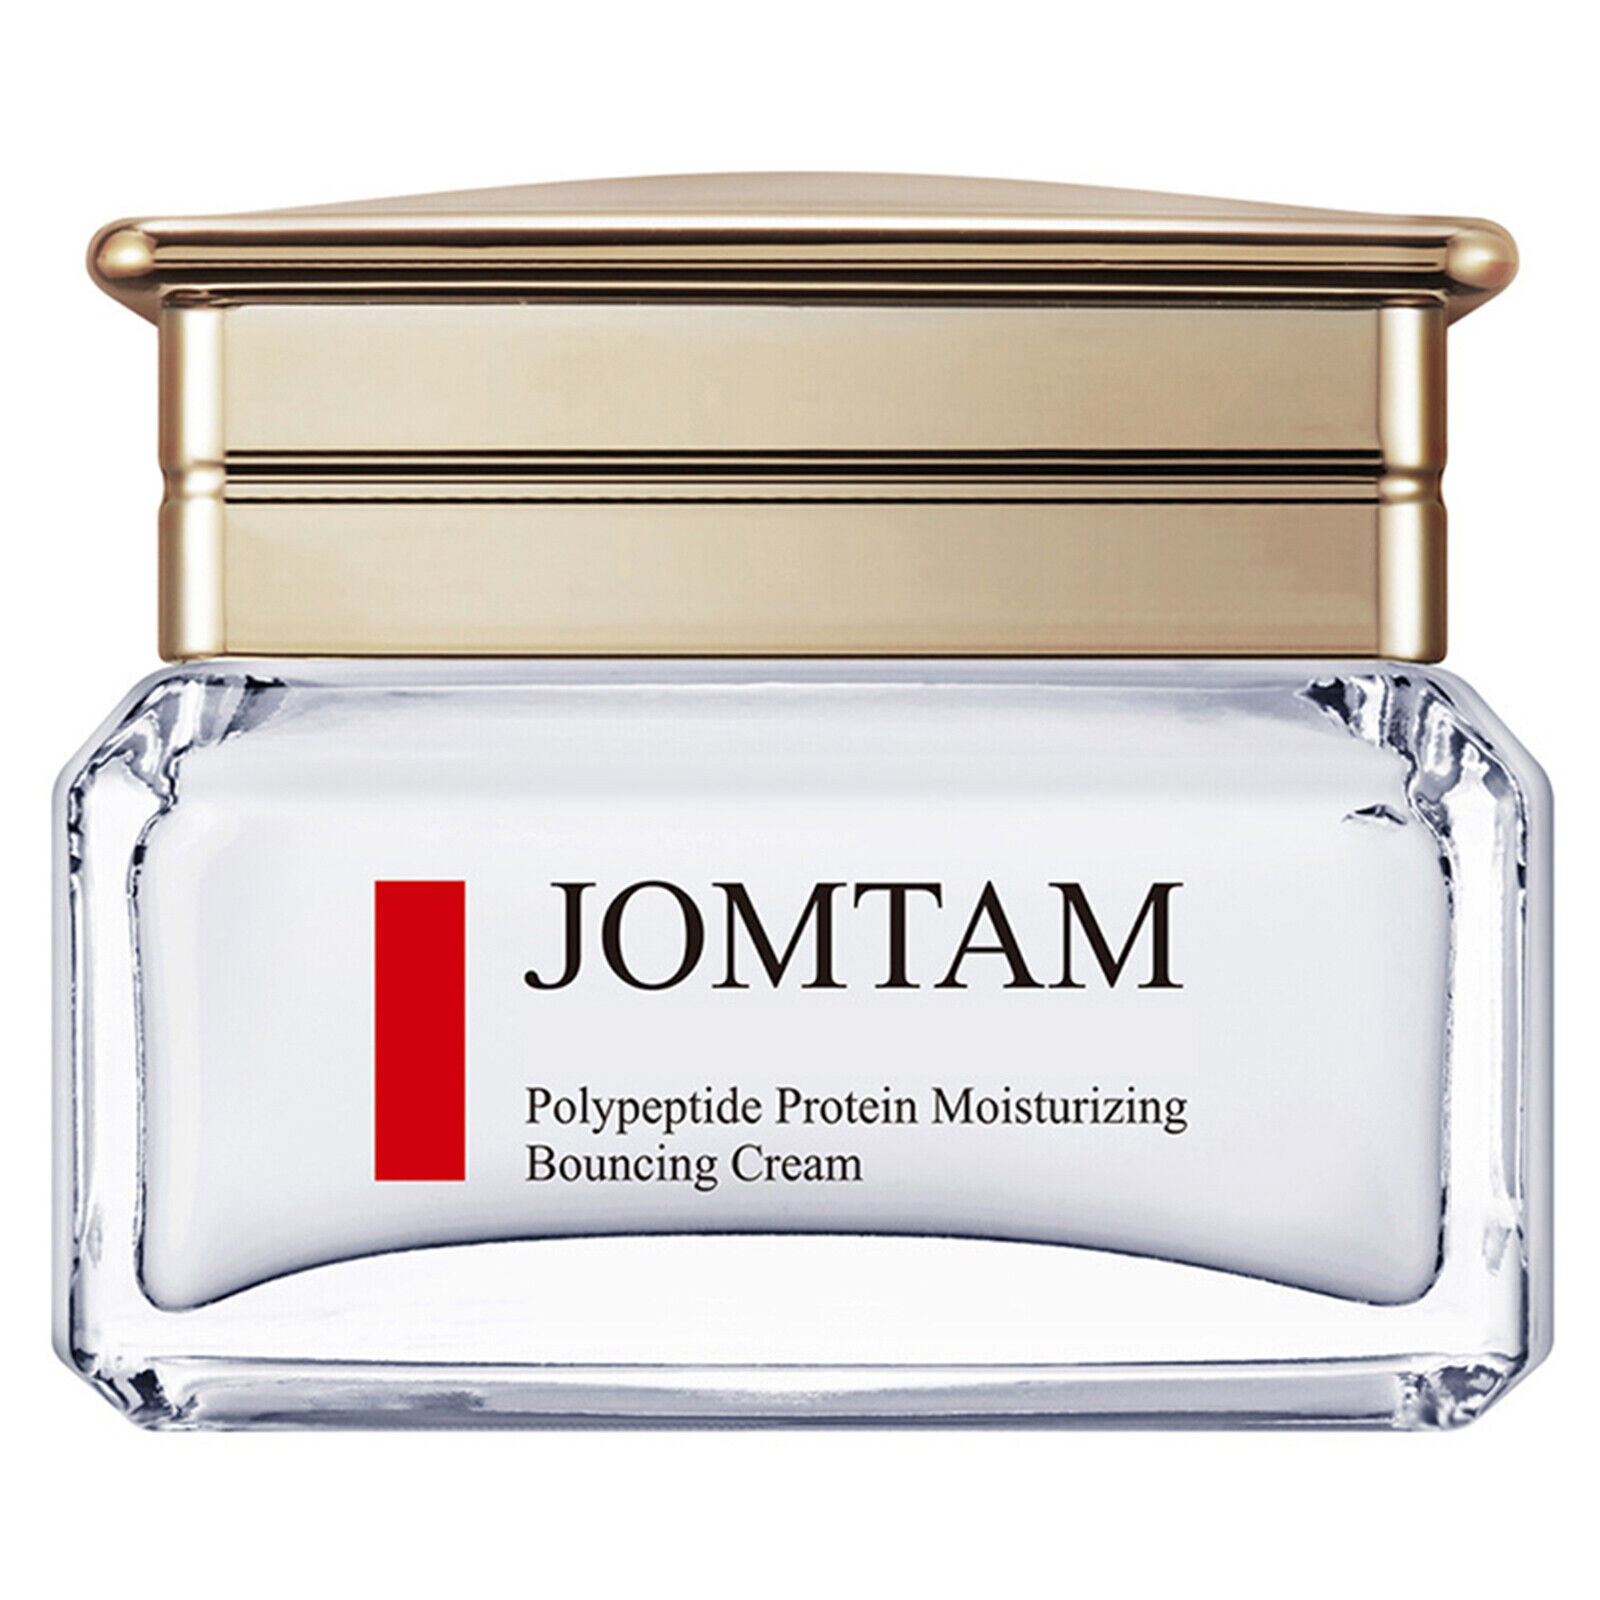 Антивозрастной крем для лица Jomtan Bouncing Cream 50 мл dr mineral’s шампунь стимуляция роста сила и питание с клеточным соком лекарственных растений 400 0